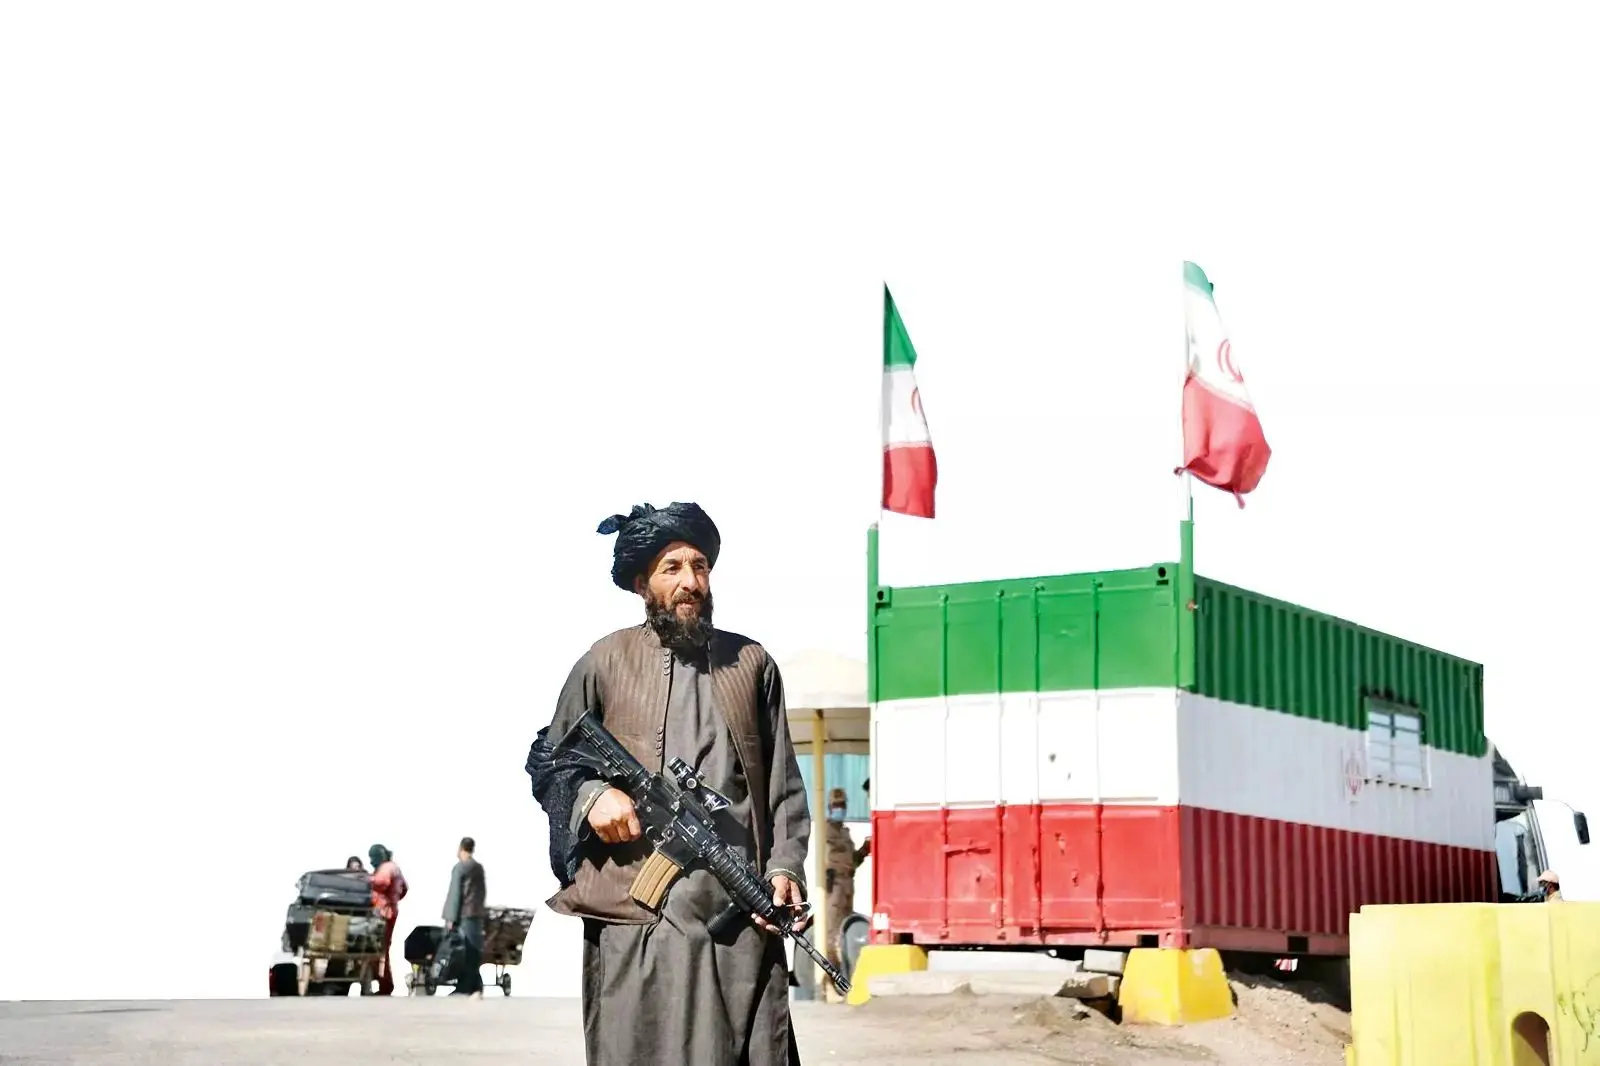 طالبان هرگز به تعهدات خود در قبال ایران عمل نخواهد کرد